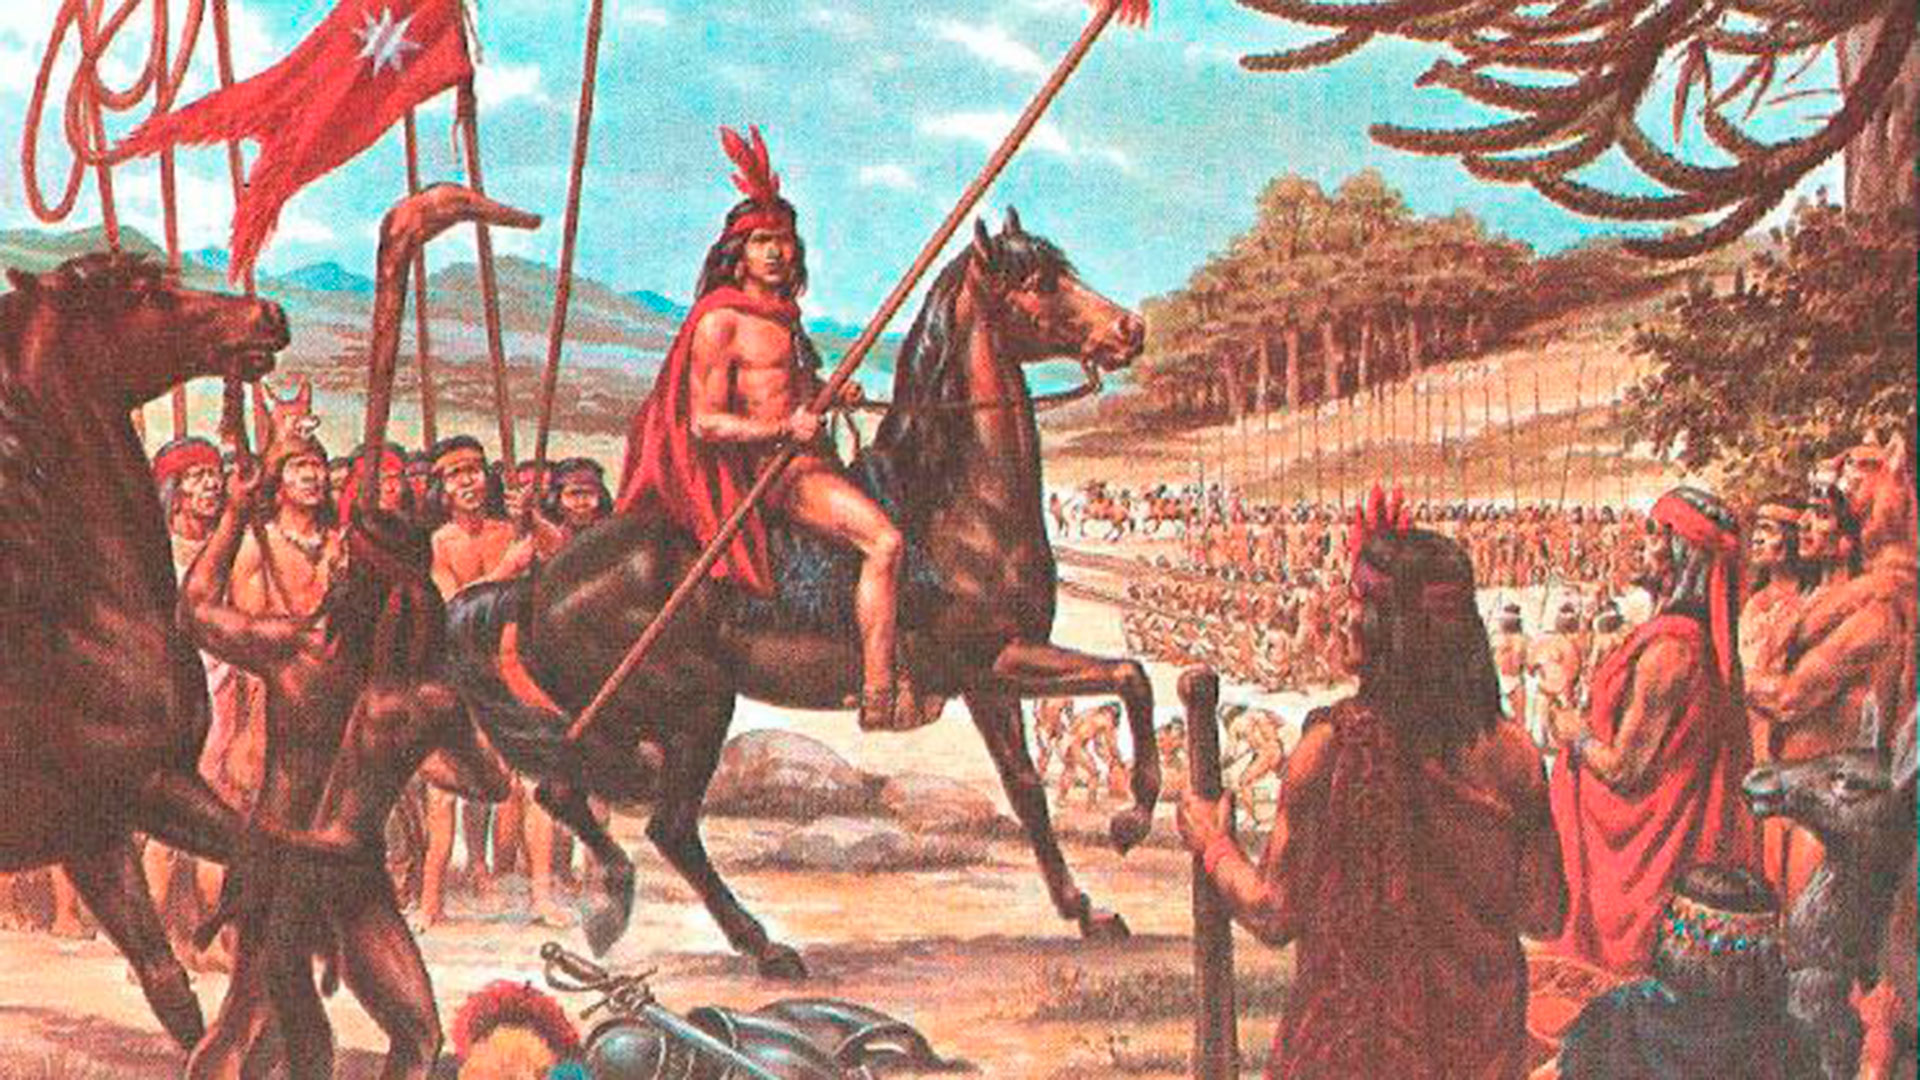 El Día de los Pueblos Indígenas y el legado de Lautaro, el líder mapuche que enfrentó a los conquistadores españoles